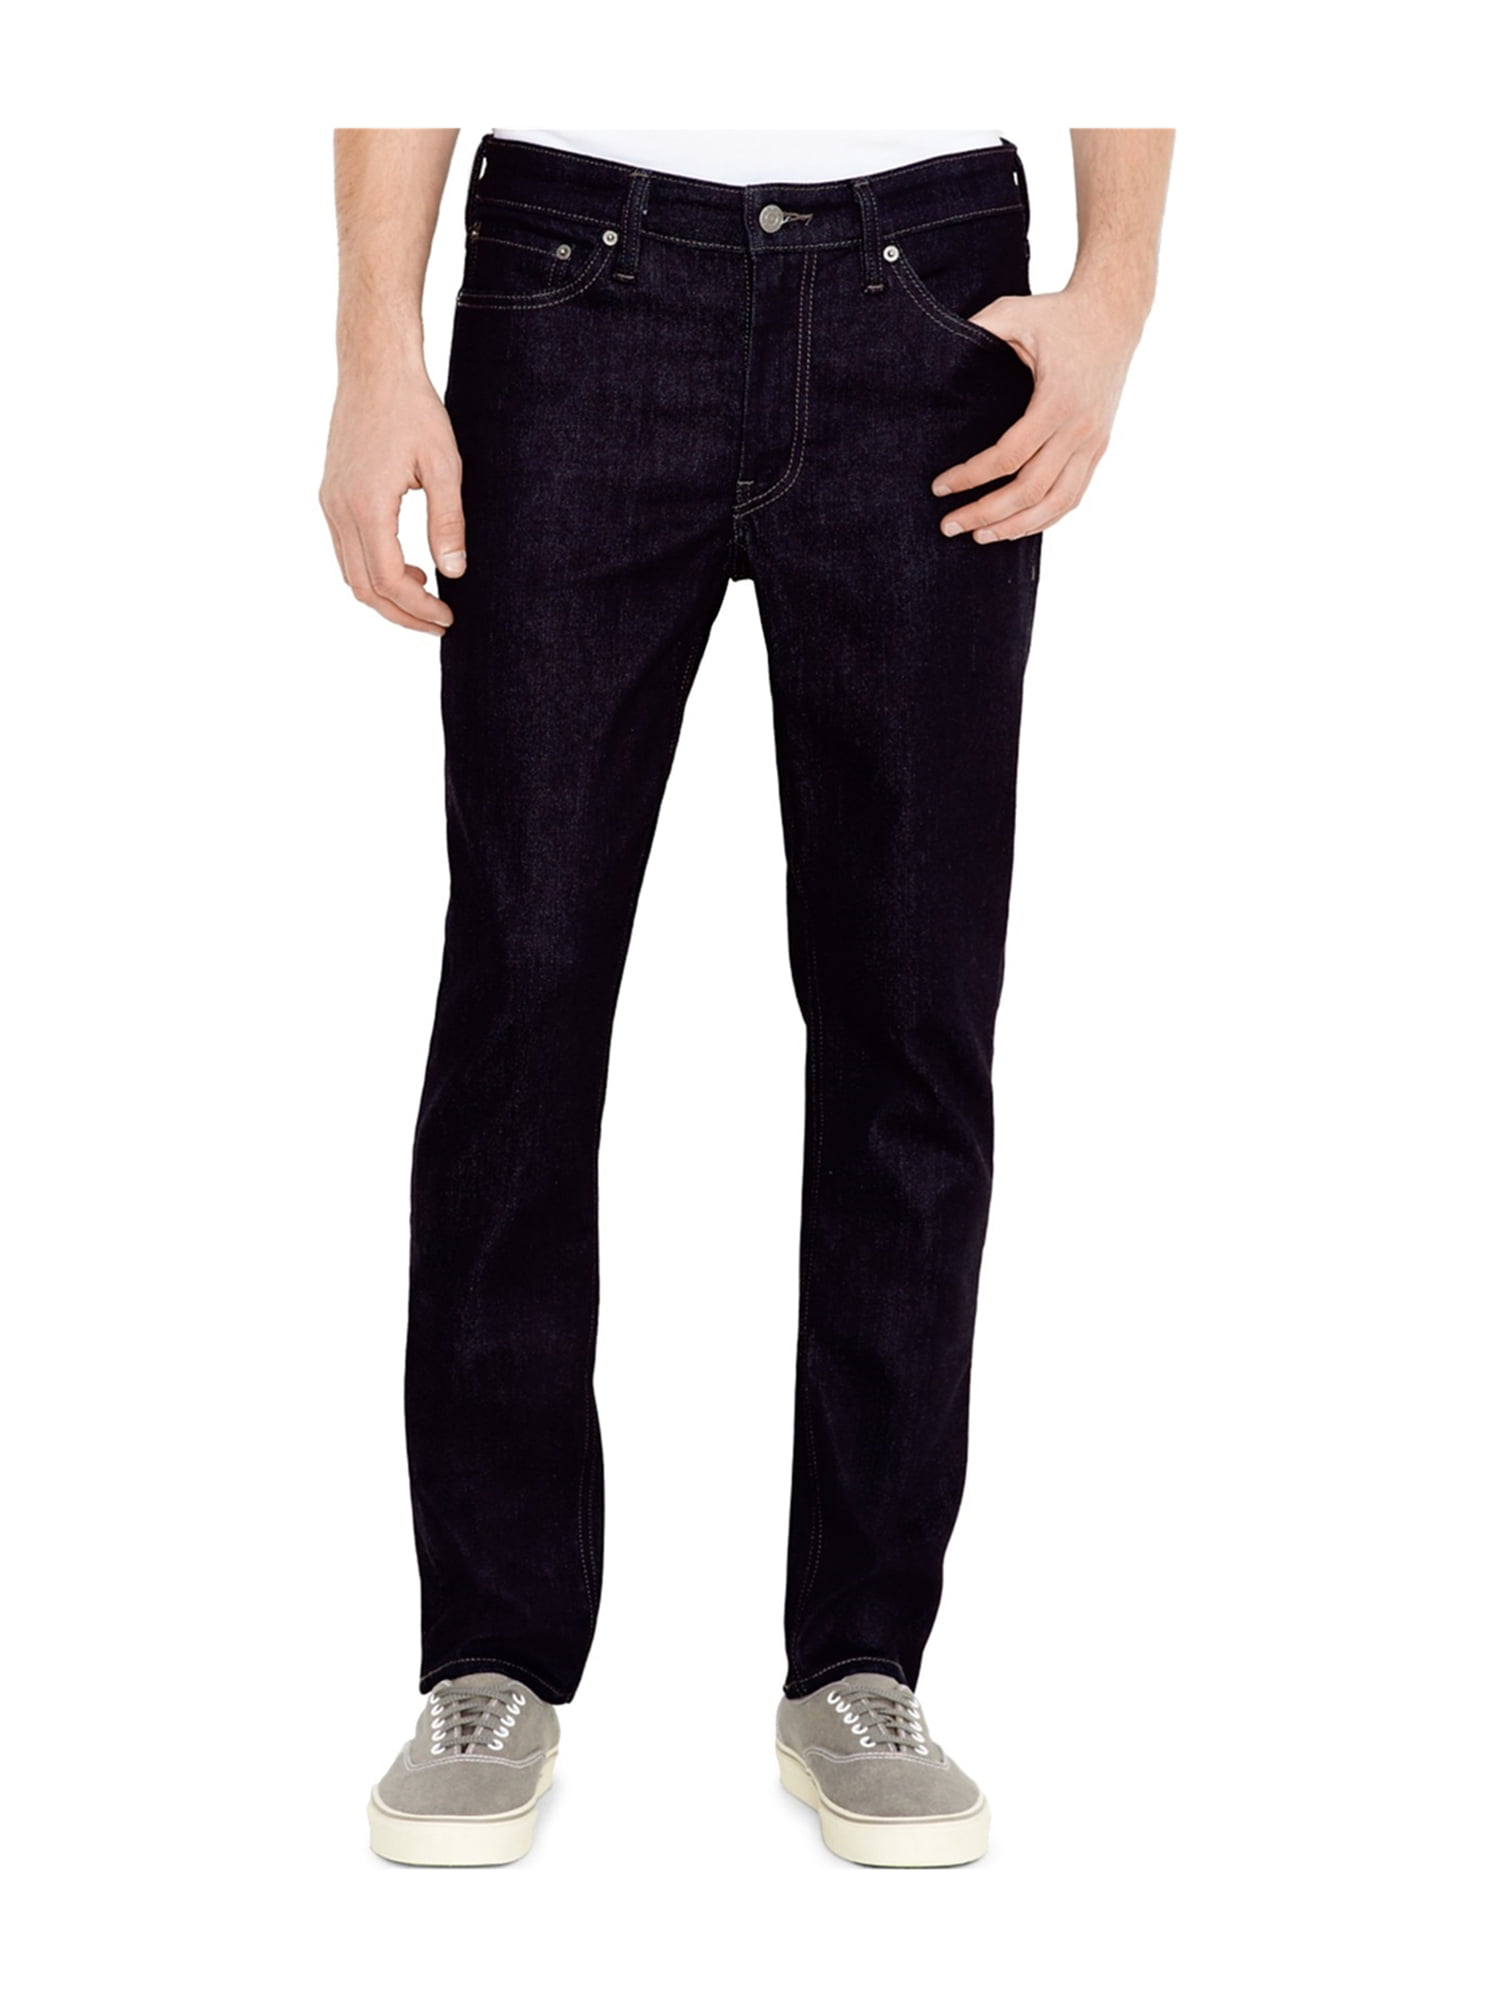 Levi's Mens Commuter Slim Fit Jeans darkblue 28x30 | Walmart Canada